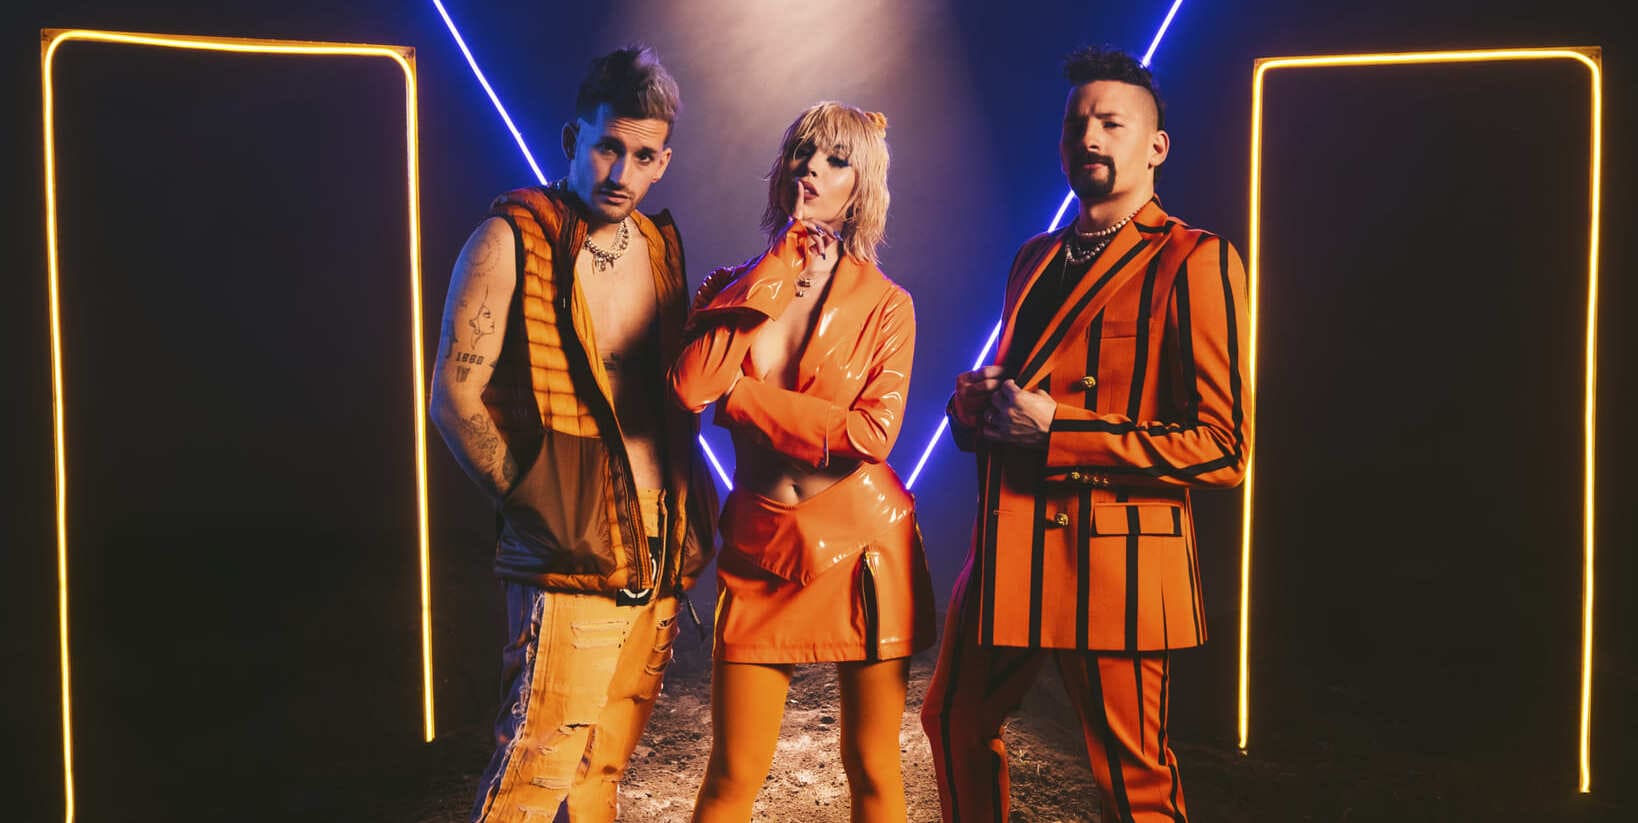 En este momento estás viendo Danna Paola junto a Mau y Ricky lanzan su nuevo sencillo y videoclip “Cachito”